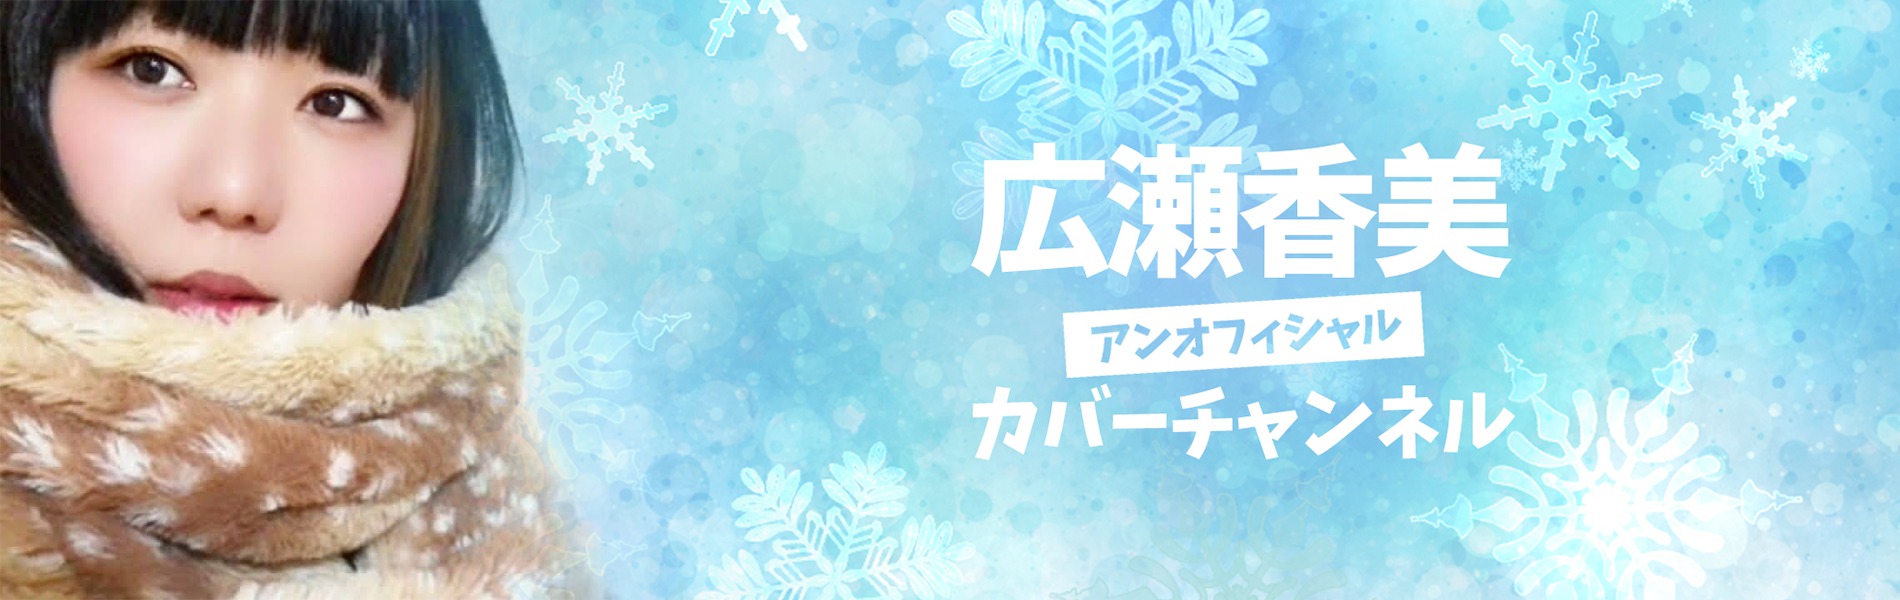 おかっぱミユキの「広瀬香美アンオフィシャルカバーチャンネル」のサムネイル画像。雪の結晶の中でマフラーを巻いたおかっぱミユキがたたずんでいる。